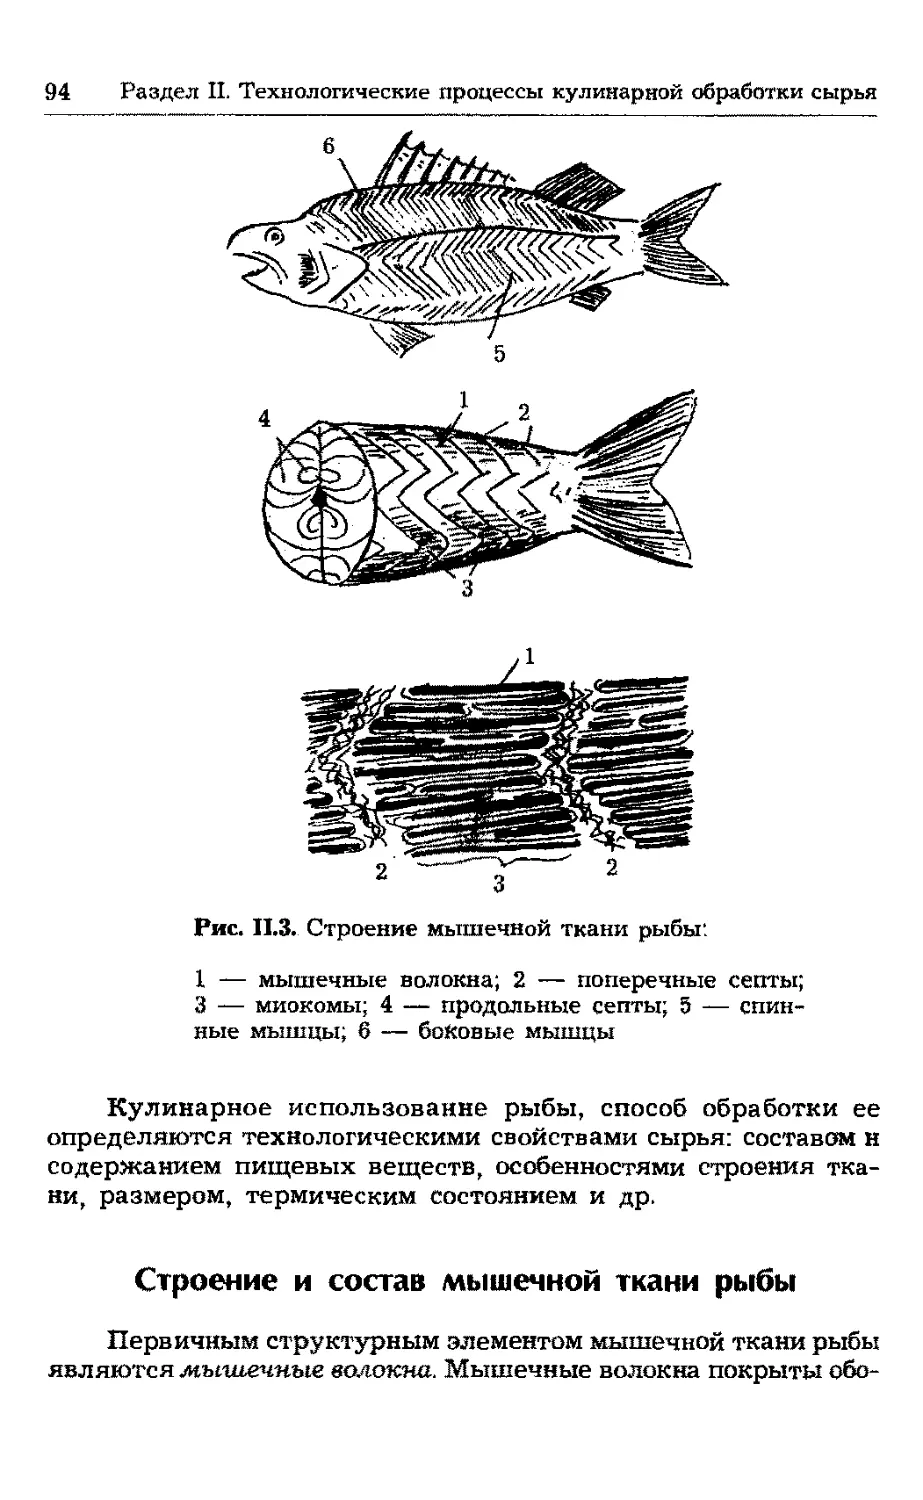 Строение и состав мышечной ткани рыбы